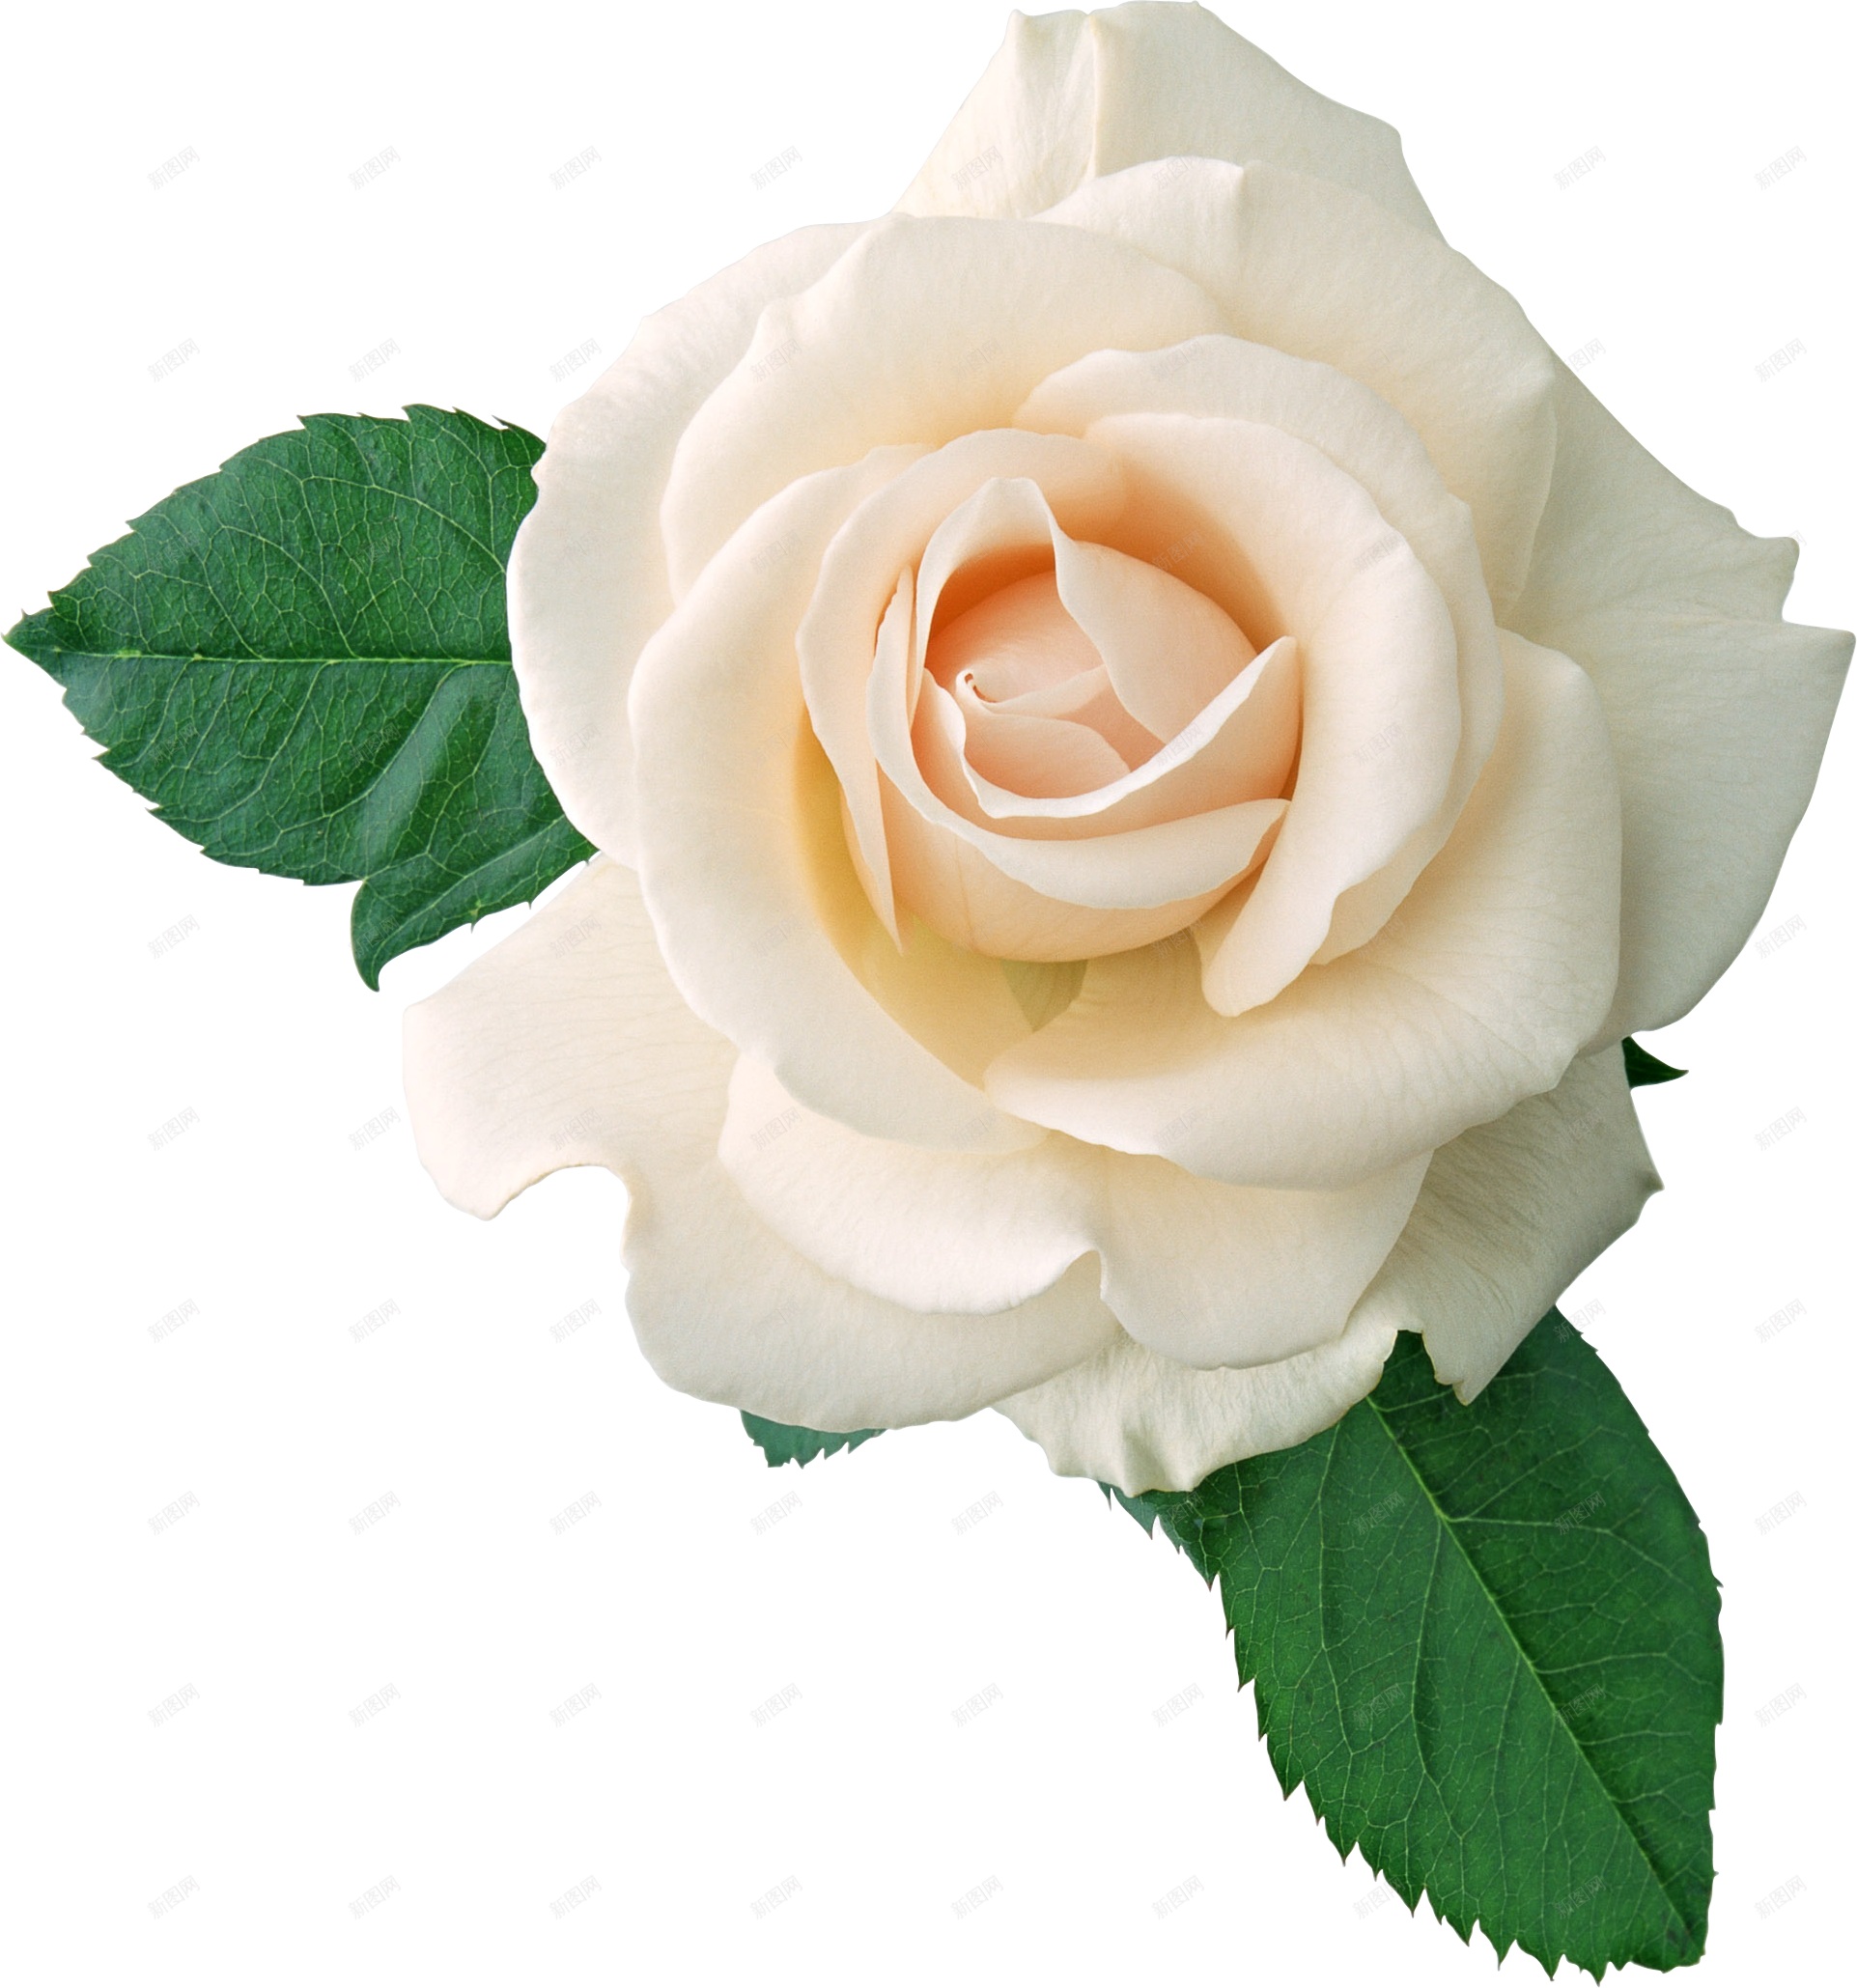 白玫瑰图片_家庭盆栽的白玫瑰图片大全 - 花卉网